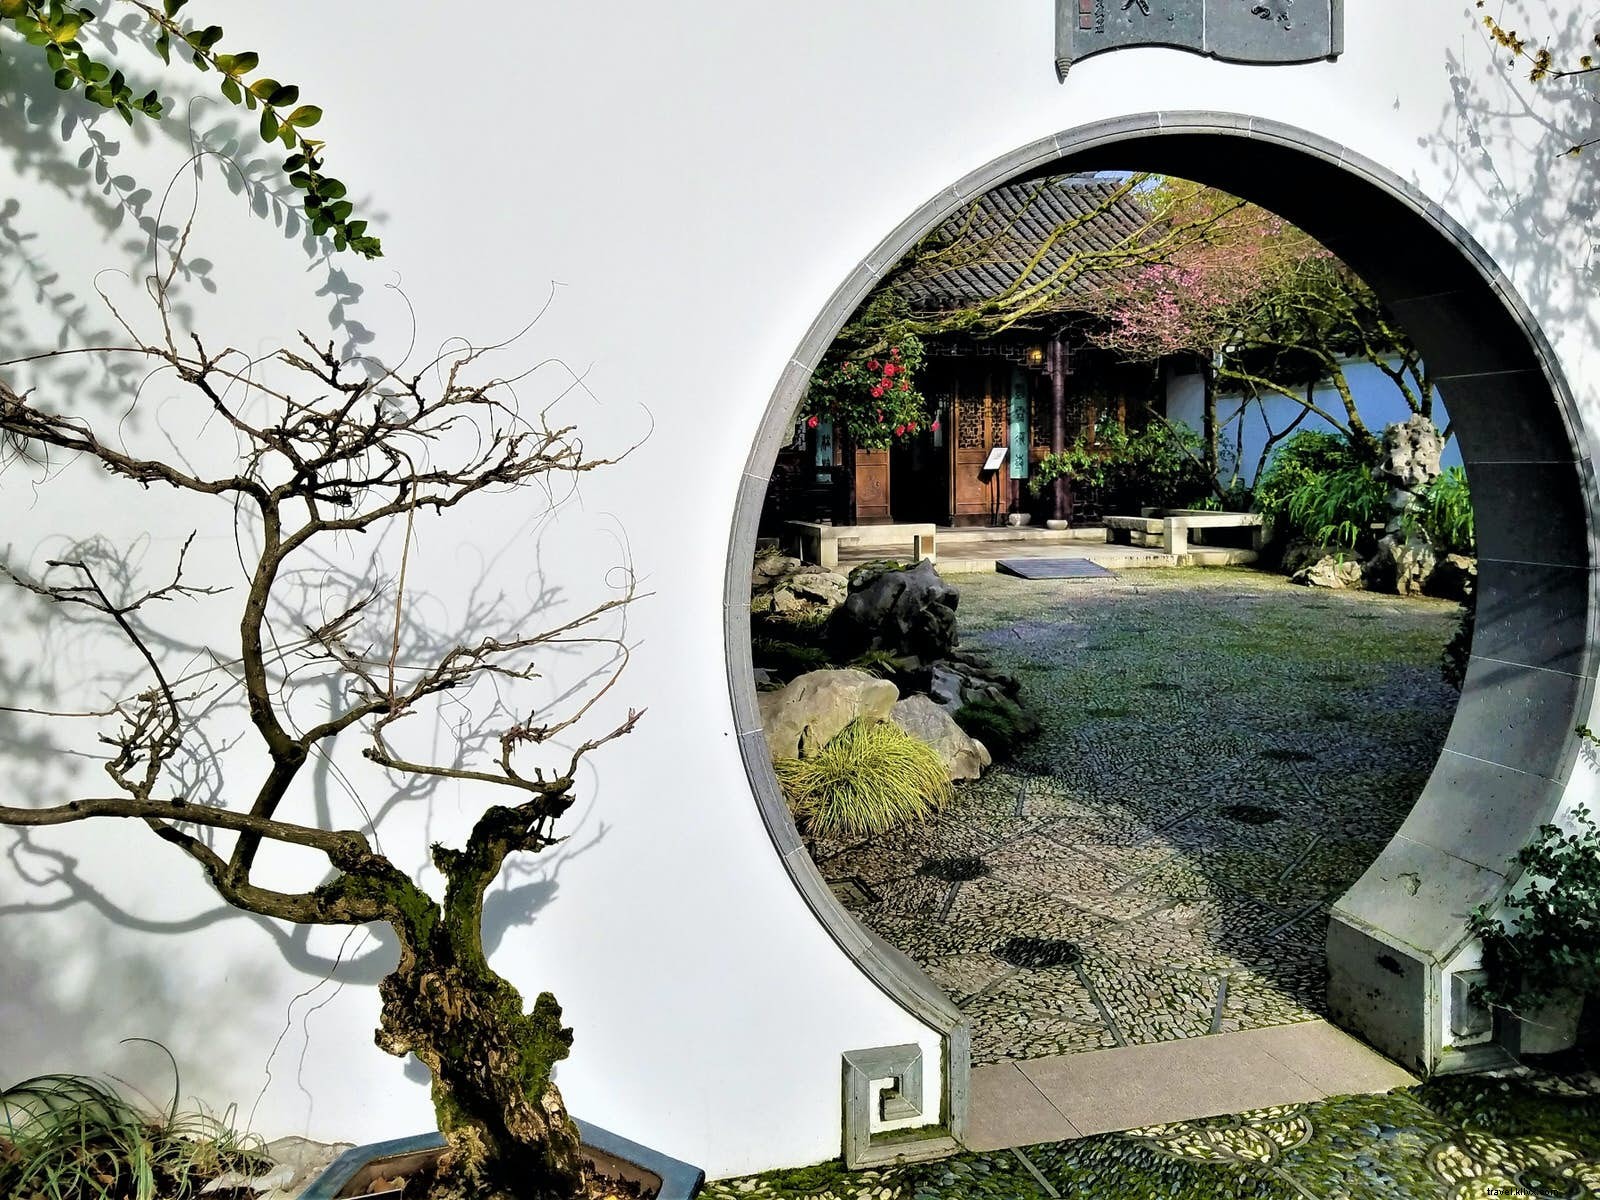 Jardín para quedarse:los elegantes jardines chinos clásicos de Suzhou 